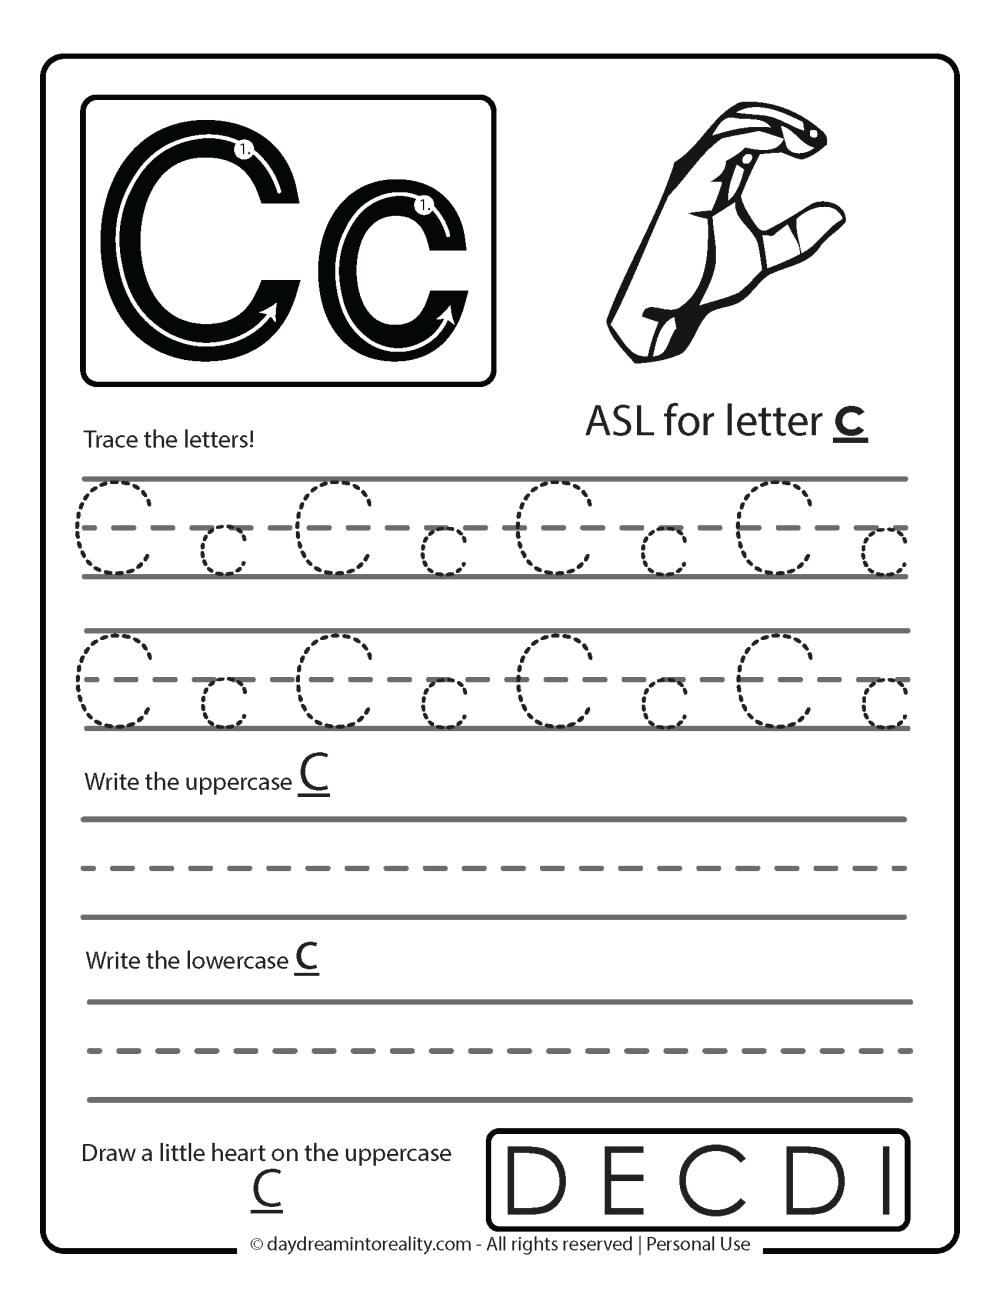 Letter C worksheet free printable - ASL letter C